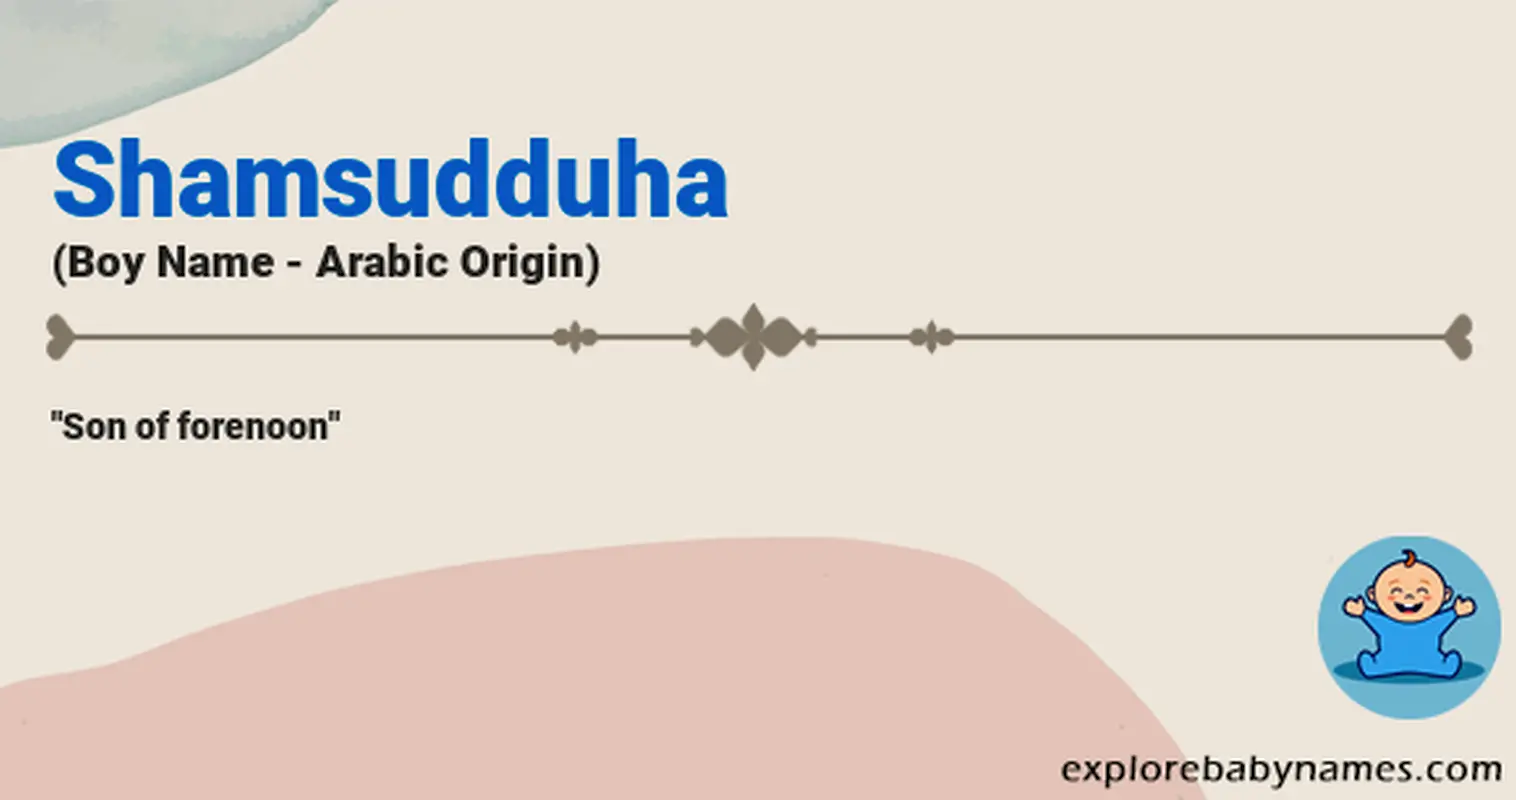 Meaning of Shamsudduha